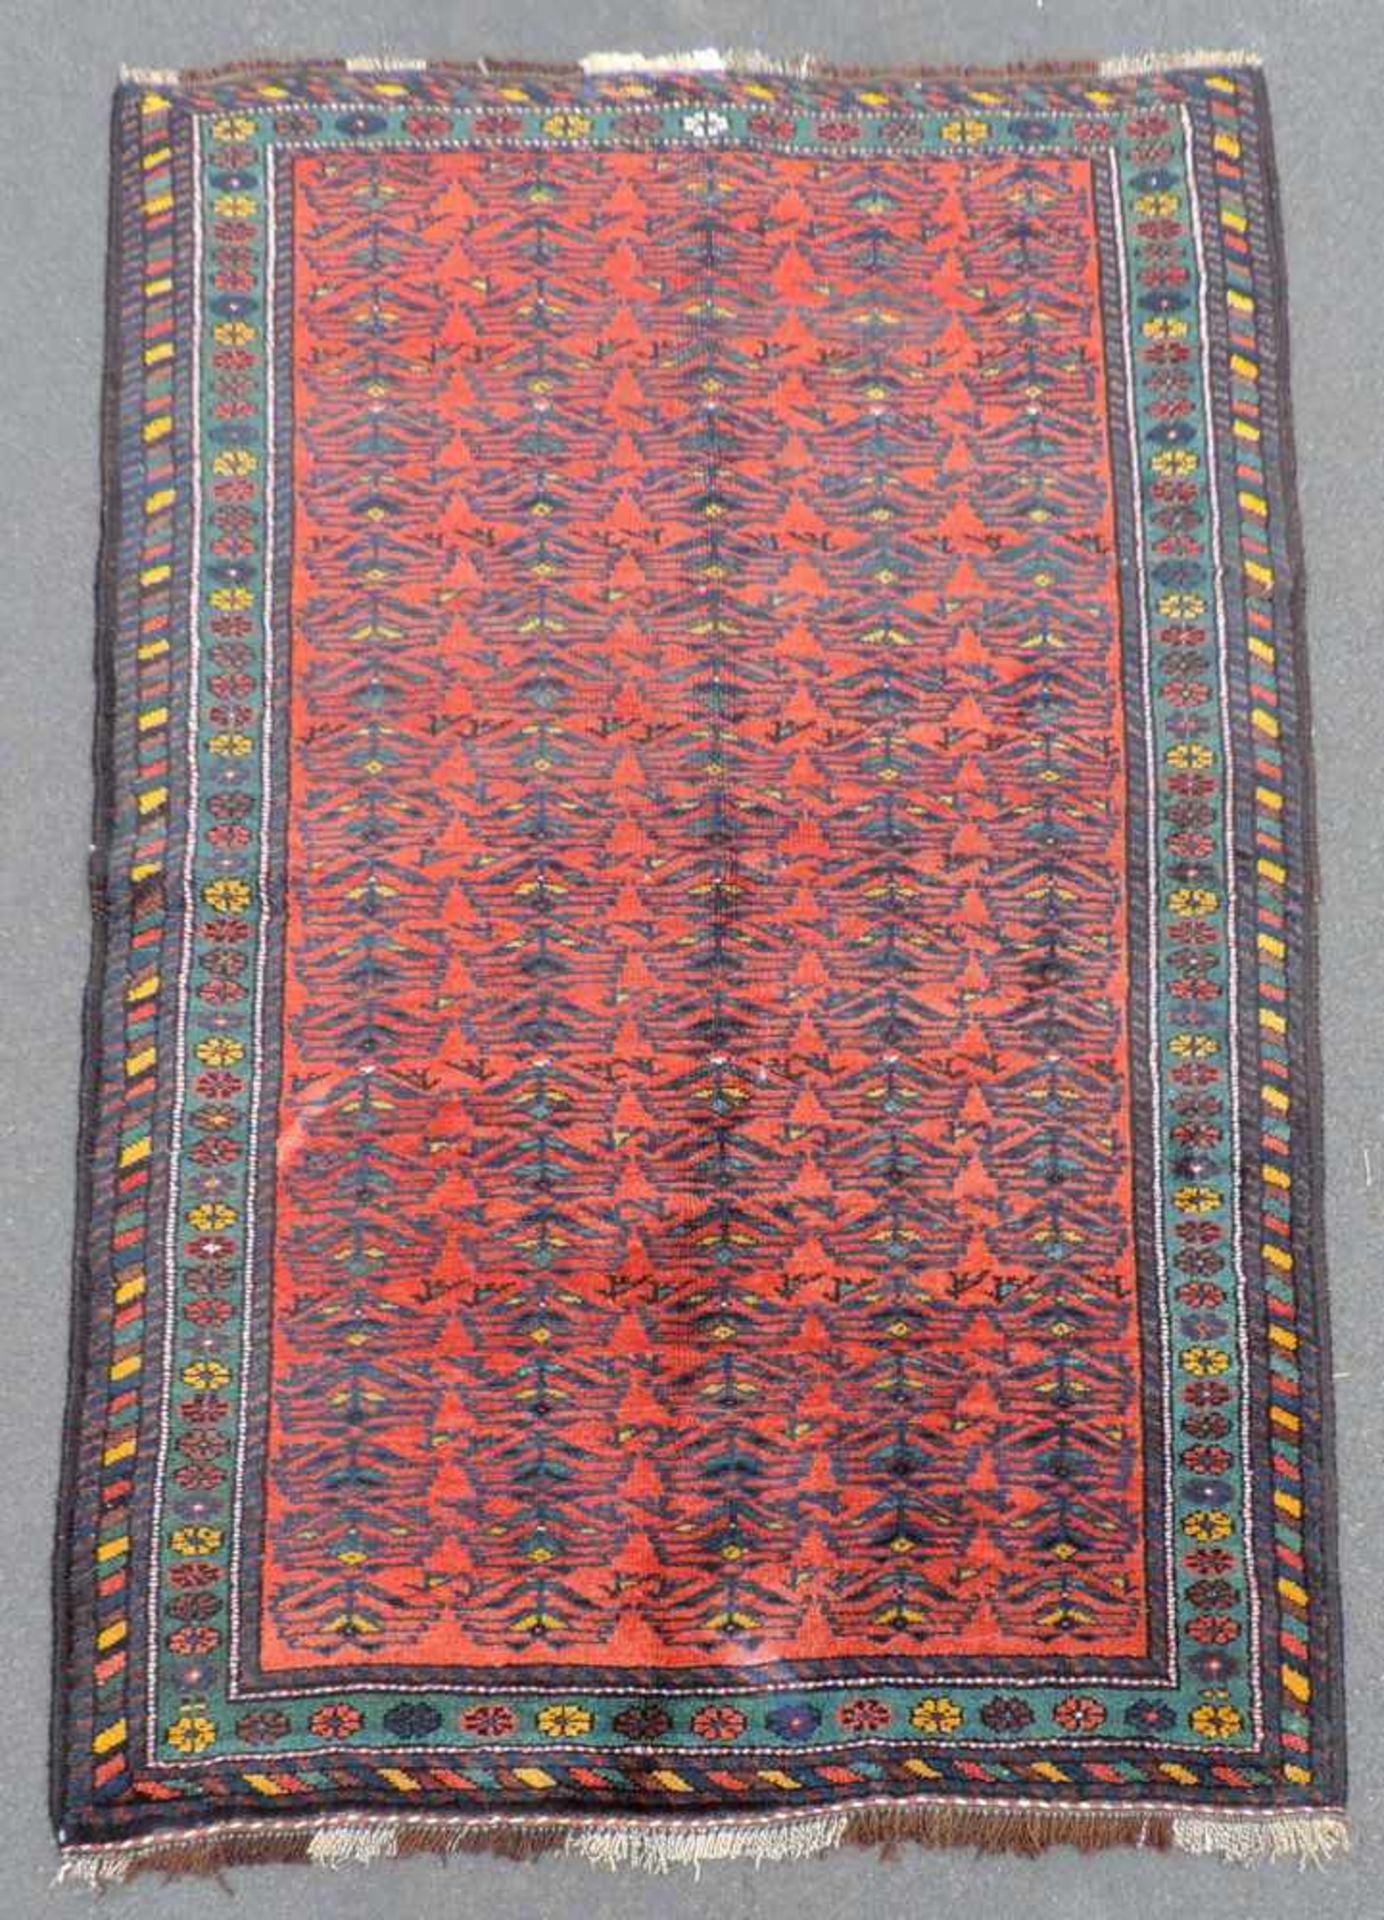 Kurdish Persian carpet. Iran. Antique, around 1910.